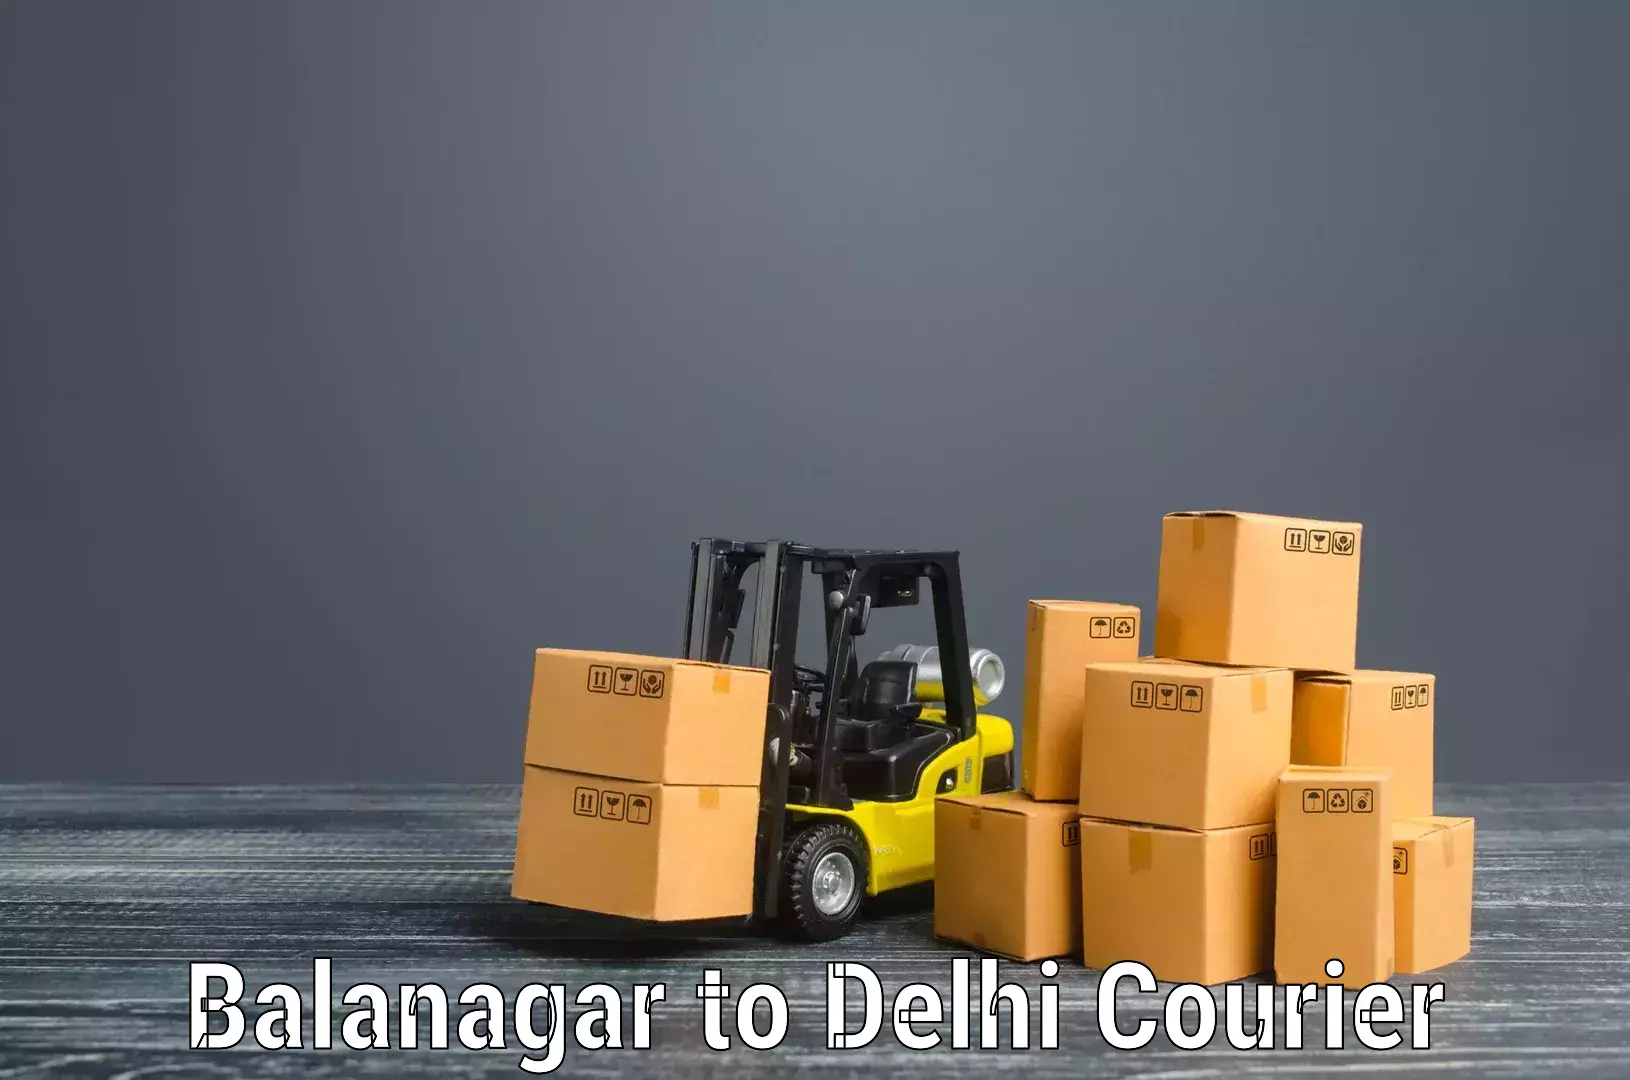 Professional movers and packers Balanagar to Subhash Nagar